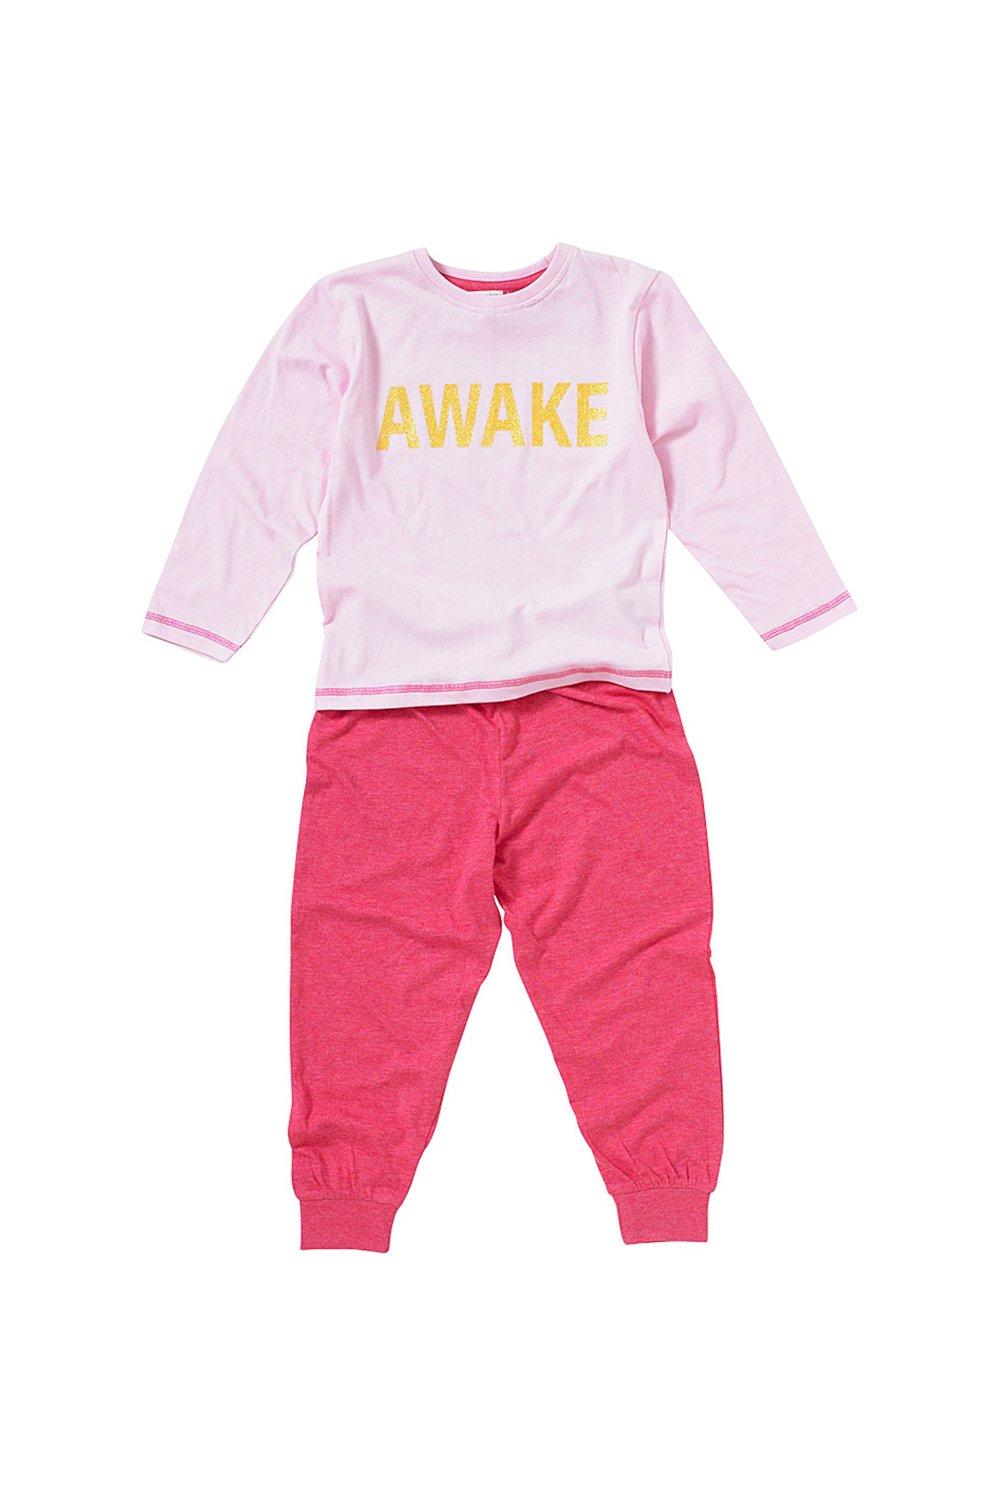 Girls Awake Pyjama Set